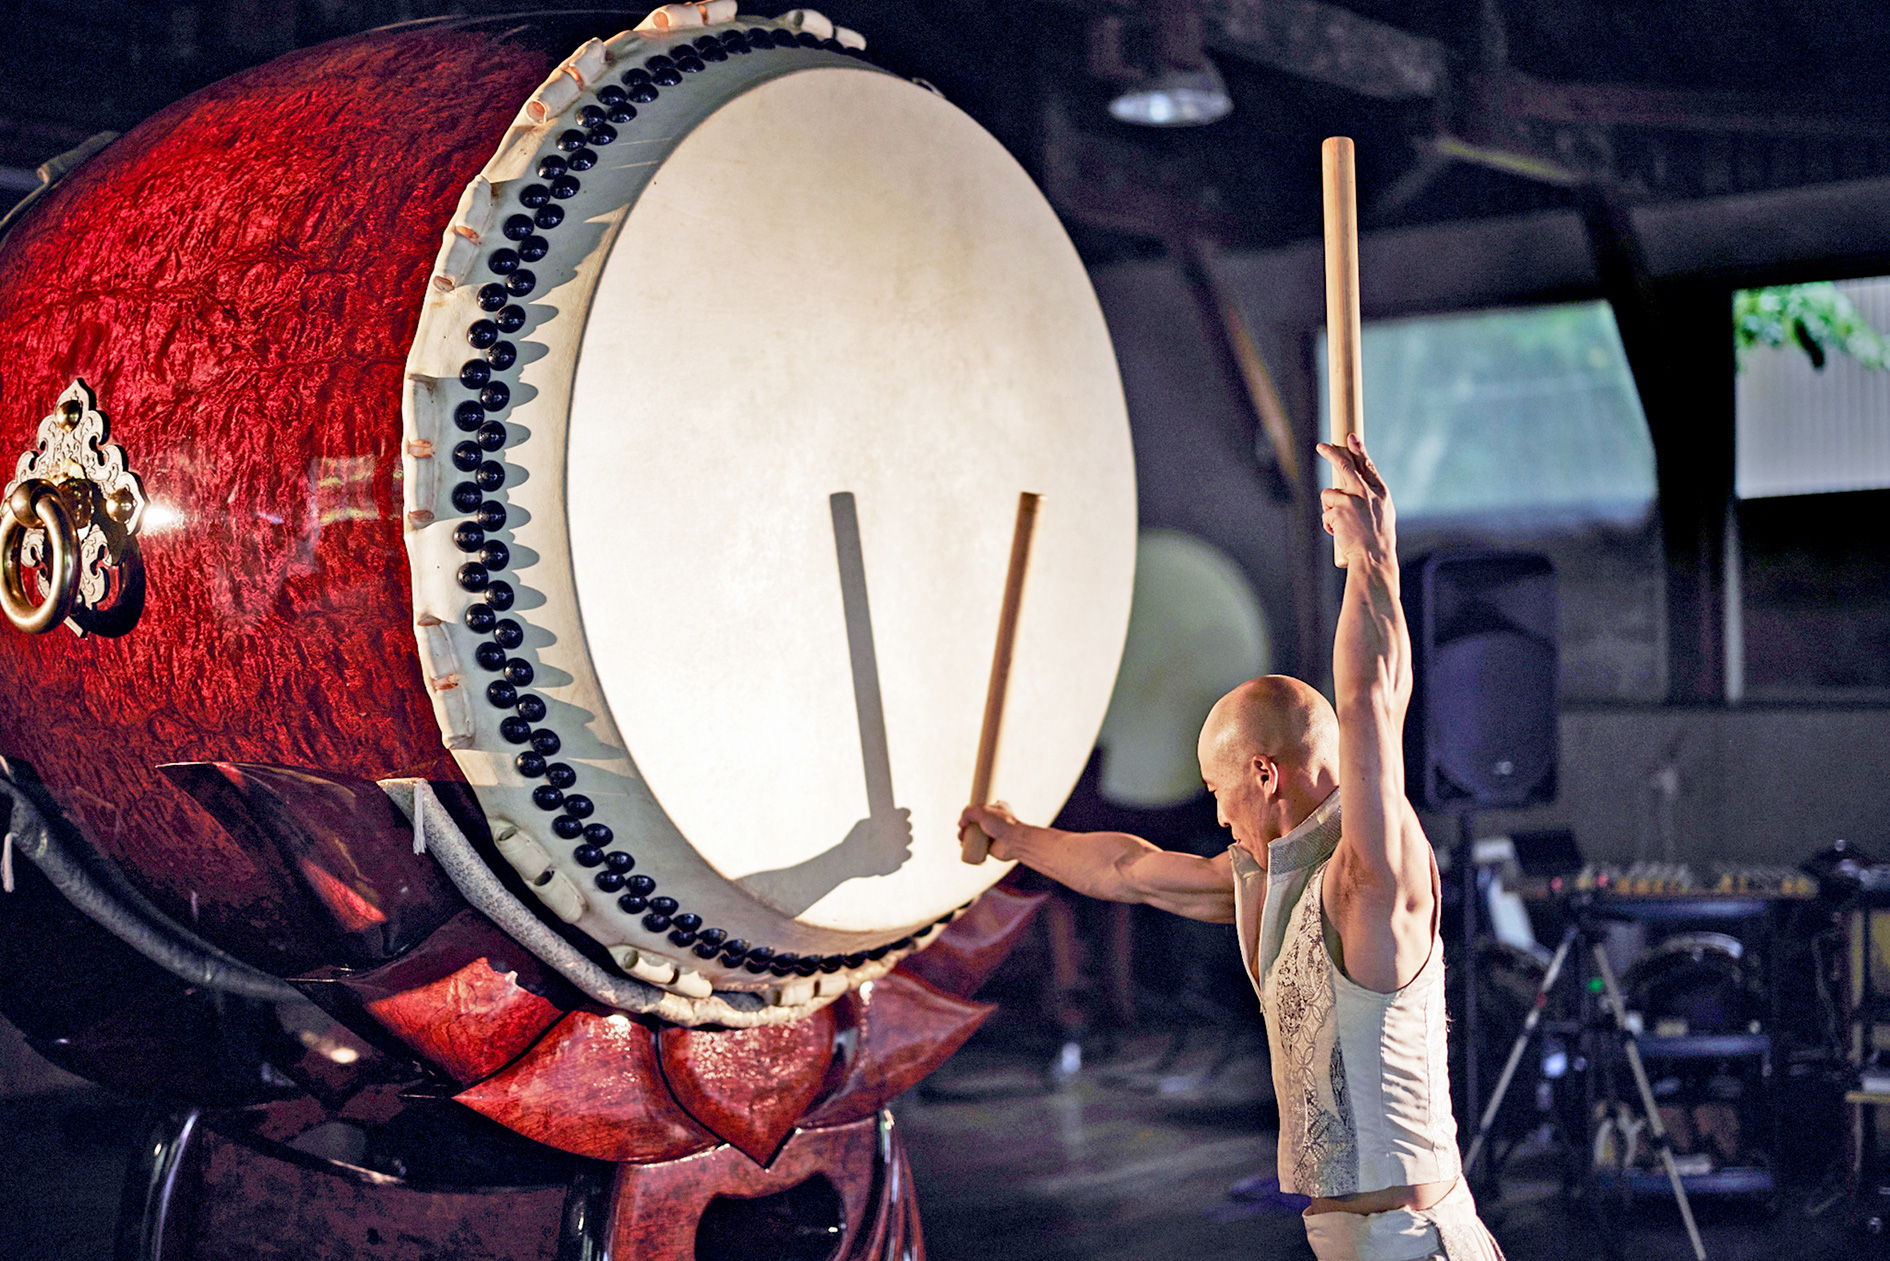 Kensaku Satou of Japan shows his mastery with Taiko drums. Photo: Koshizuka Mitsuki